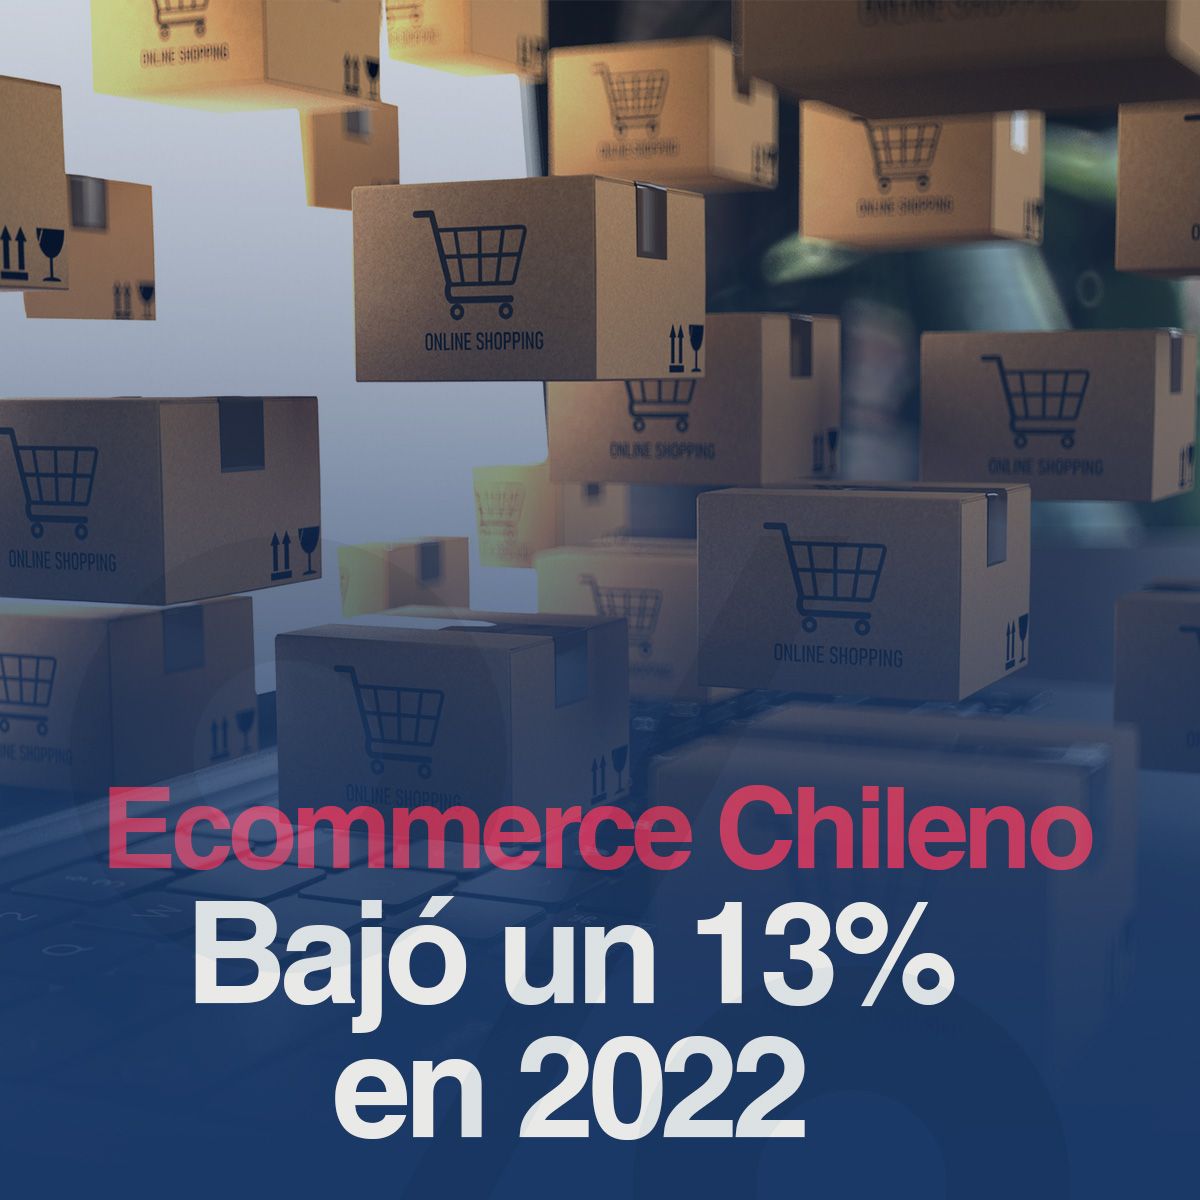 Ecommerce Chileno Bajó un 13% en 2022